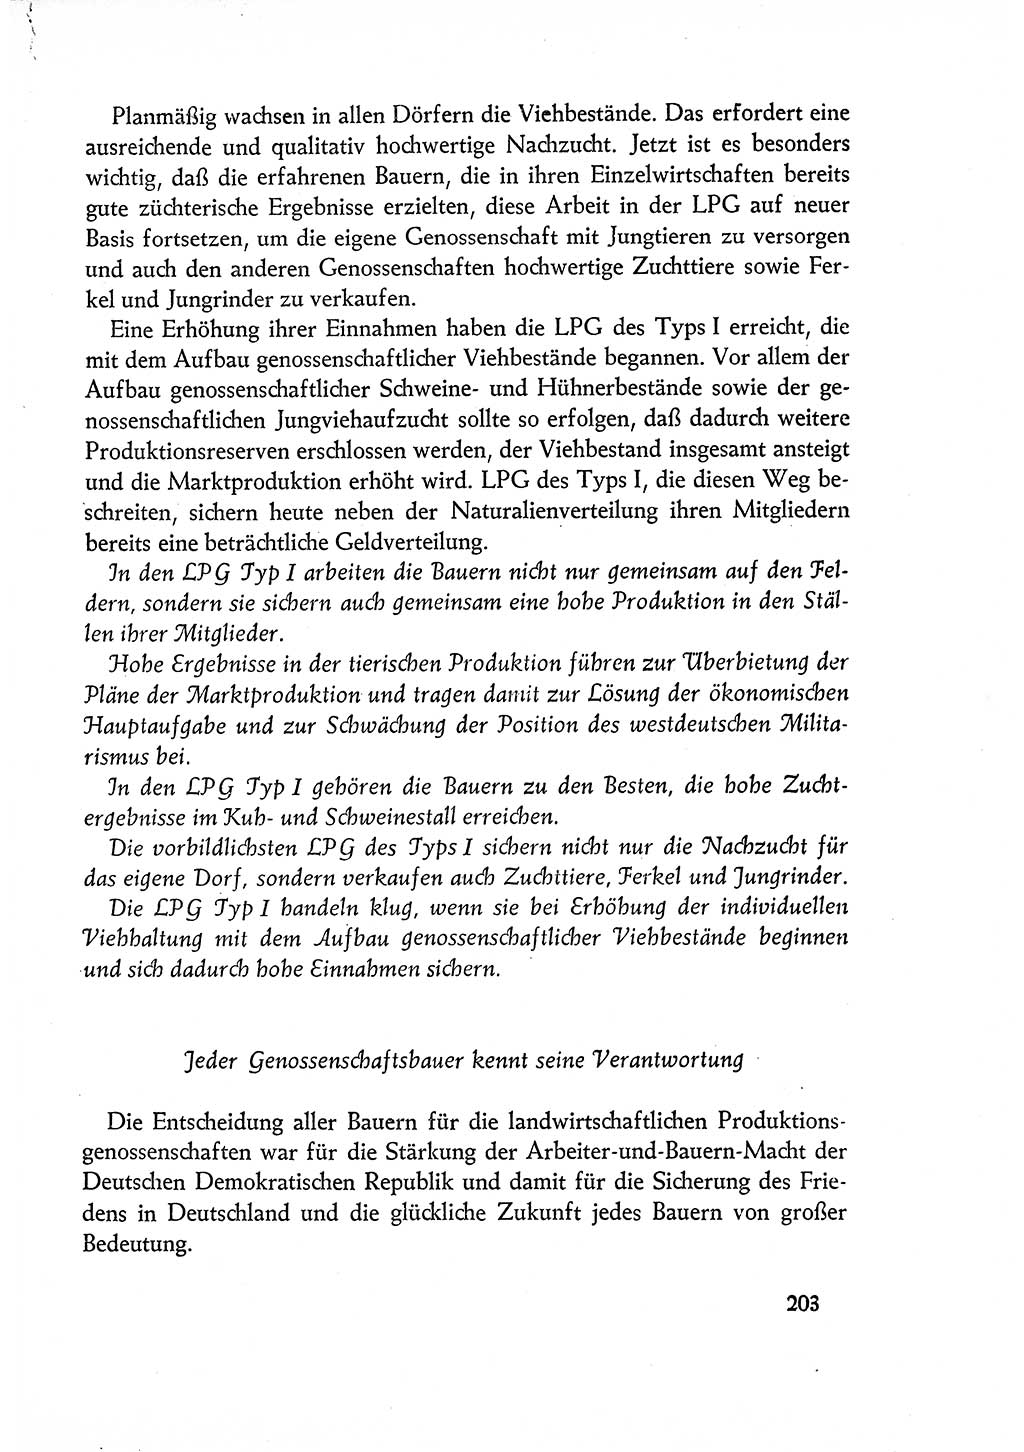 Dokumente der Sozialistischen Einheitspartei Deutschlands (SED) [Deutsche Demokratische Republik (DDR)] 1960-1961, Seite 203 (Dok. SED DDR 1960-1961, S. 203)